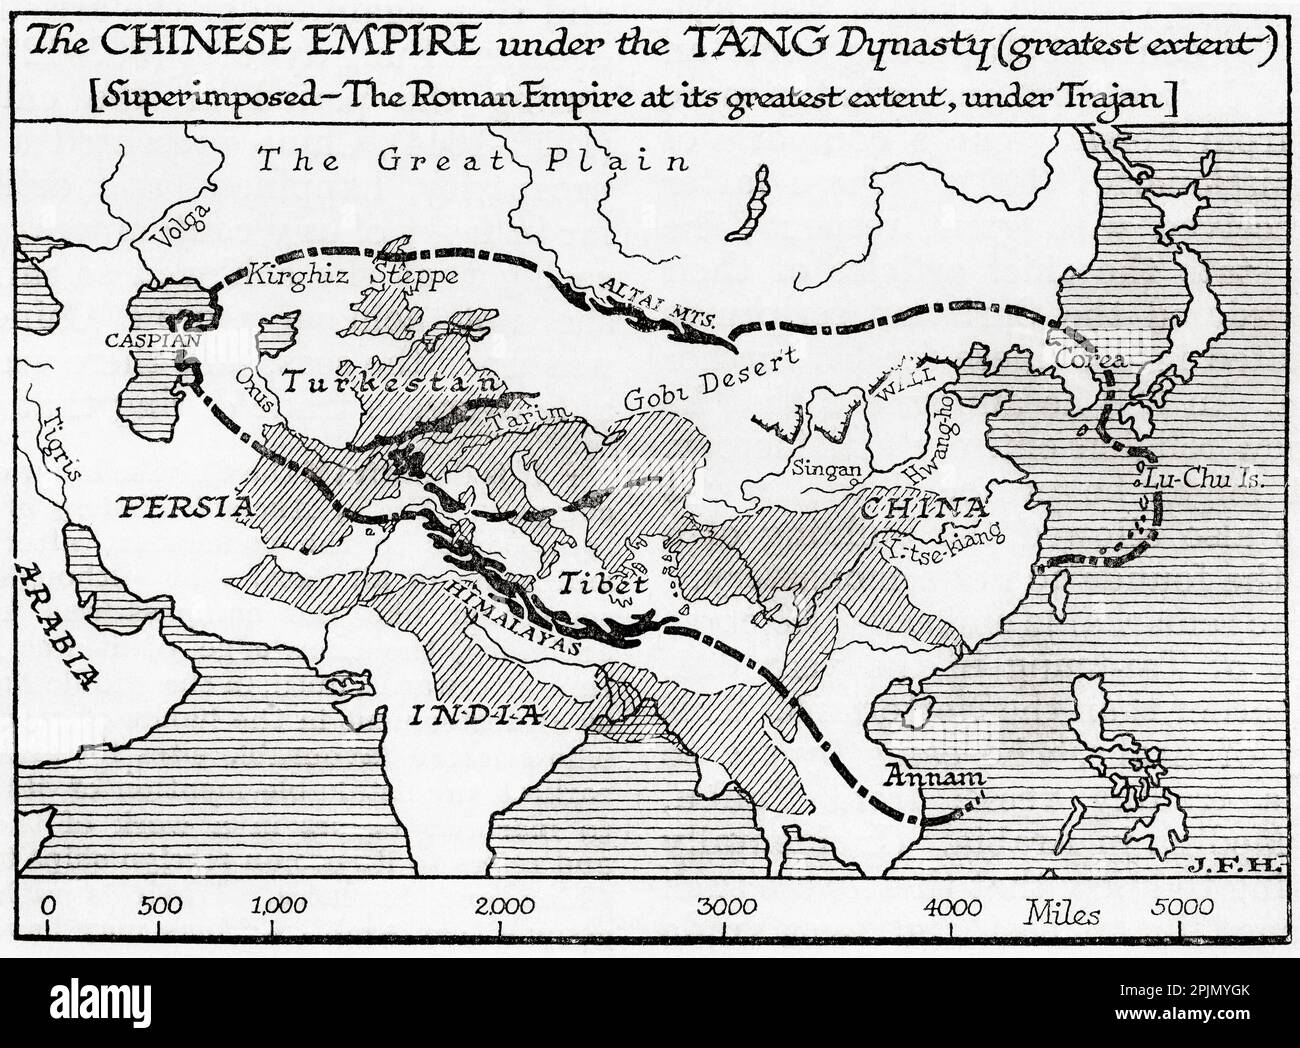 Carte de l'Empire chinois sous la dynastie Tang, à sa plus grande étendue et, superposée, l'Empire romain à sa plus grande étendue sous Trajan. Extrait du livre Outline of History de H.G. Puits, publié en 1920. Banque D'Images